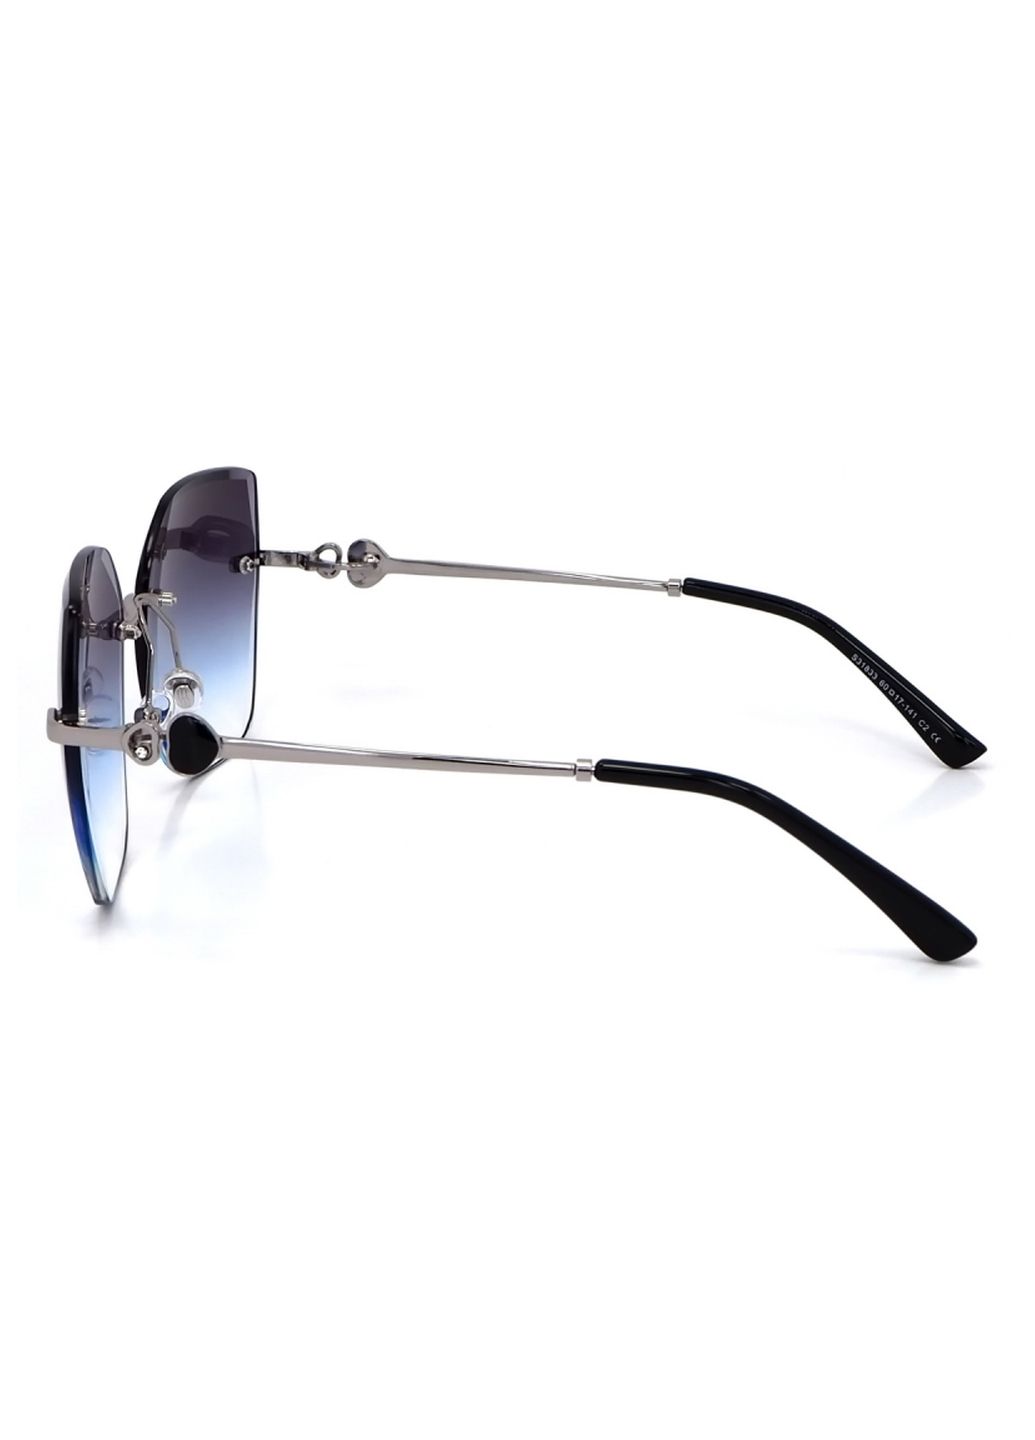 Купить Женские солнцезащитные очки Merlini с поляризацией S31833 117089 - Серый в интернет-магазине